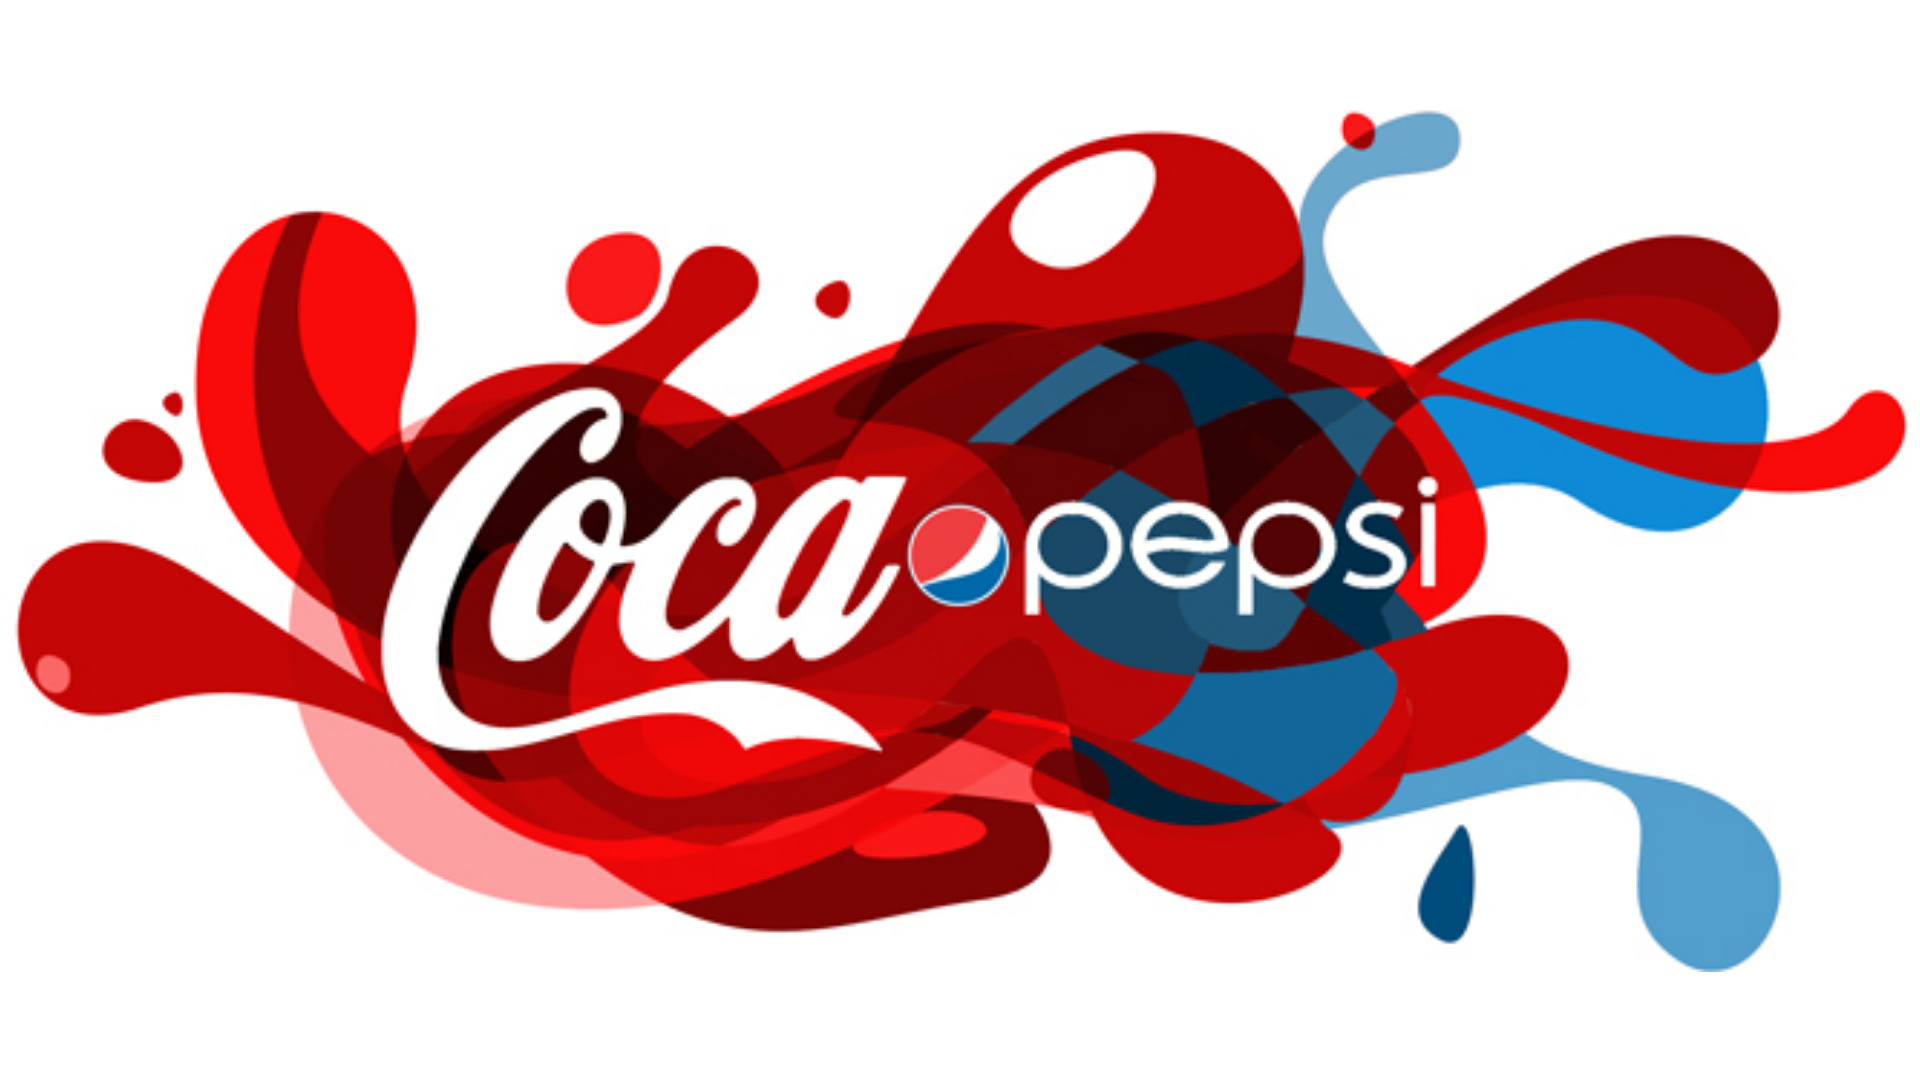 Coca Cola ve Pepsi logolarına ait bir görsel.